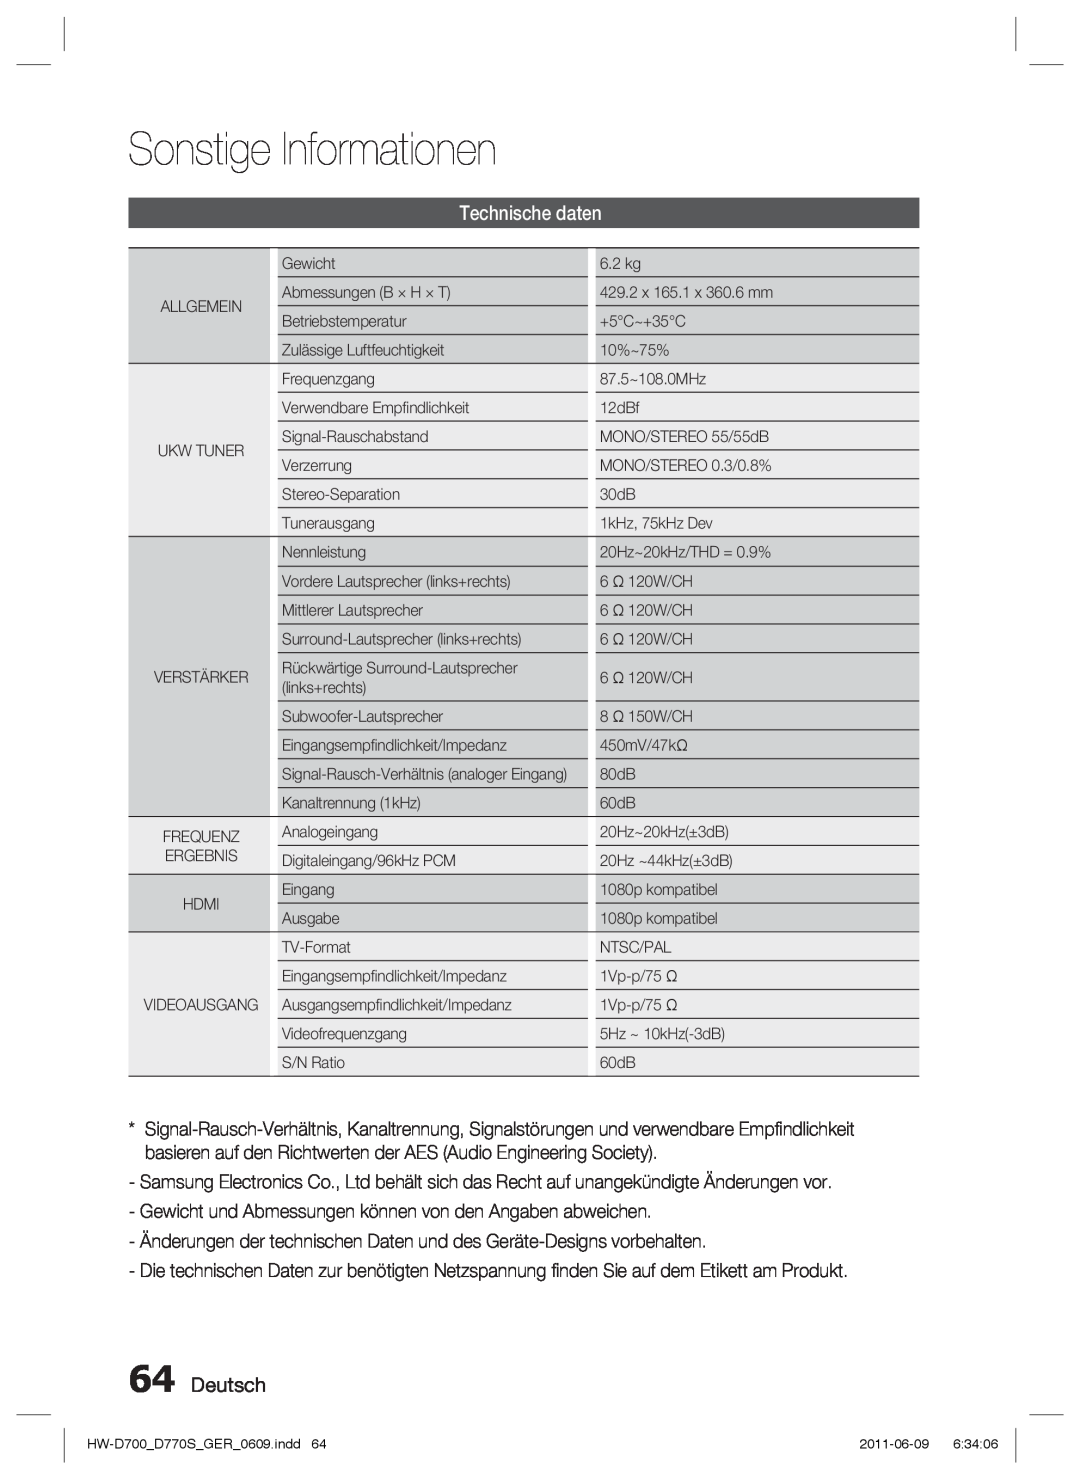 Samsung HW-D770S/EN, HW-D700/EN manual Technische daten, Deutsch, Sonstige Informationen 